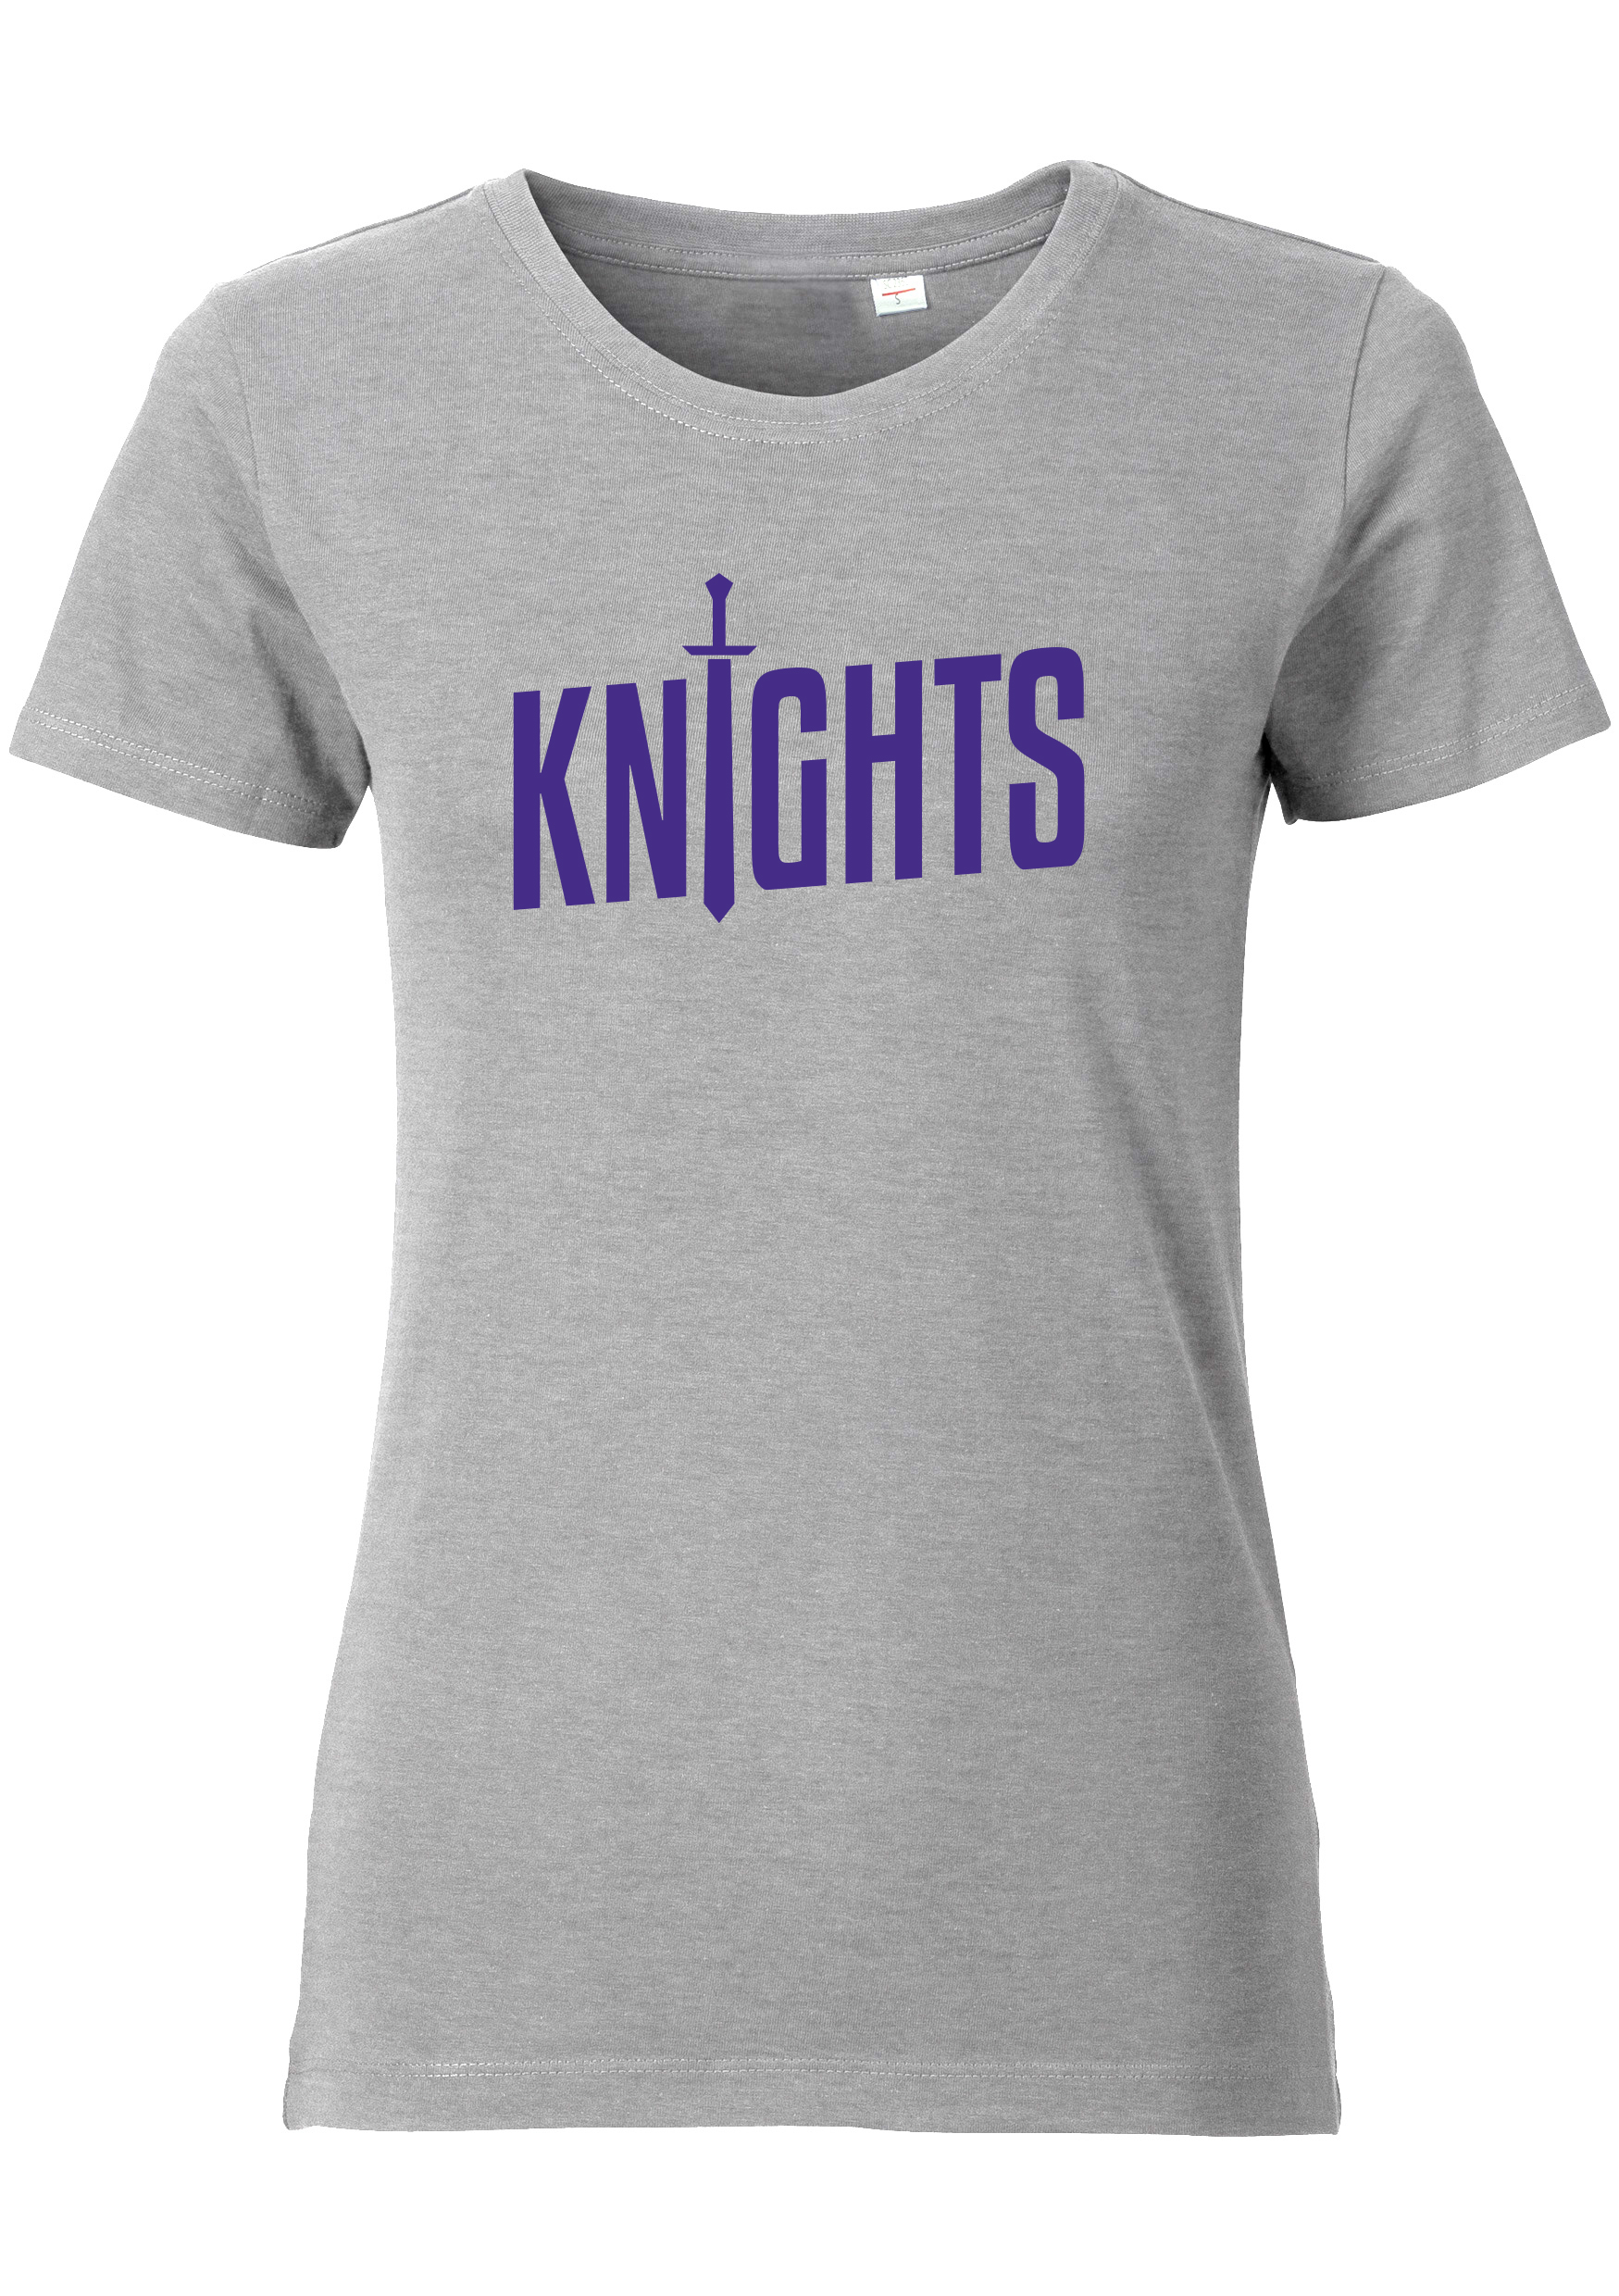 Schwaben Knights Damen T-Shirt mit Schriftzug